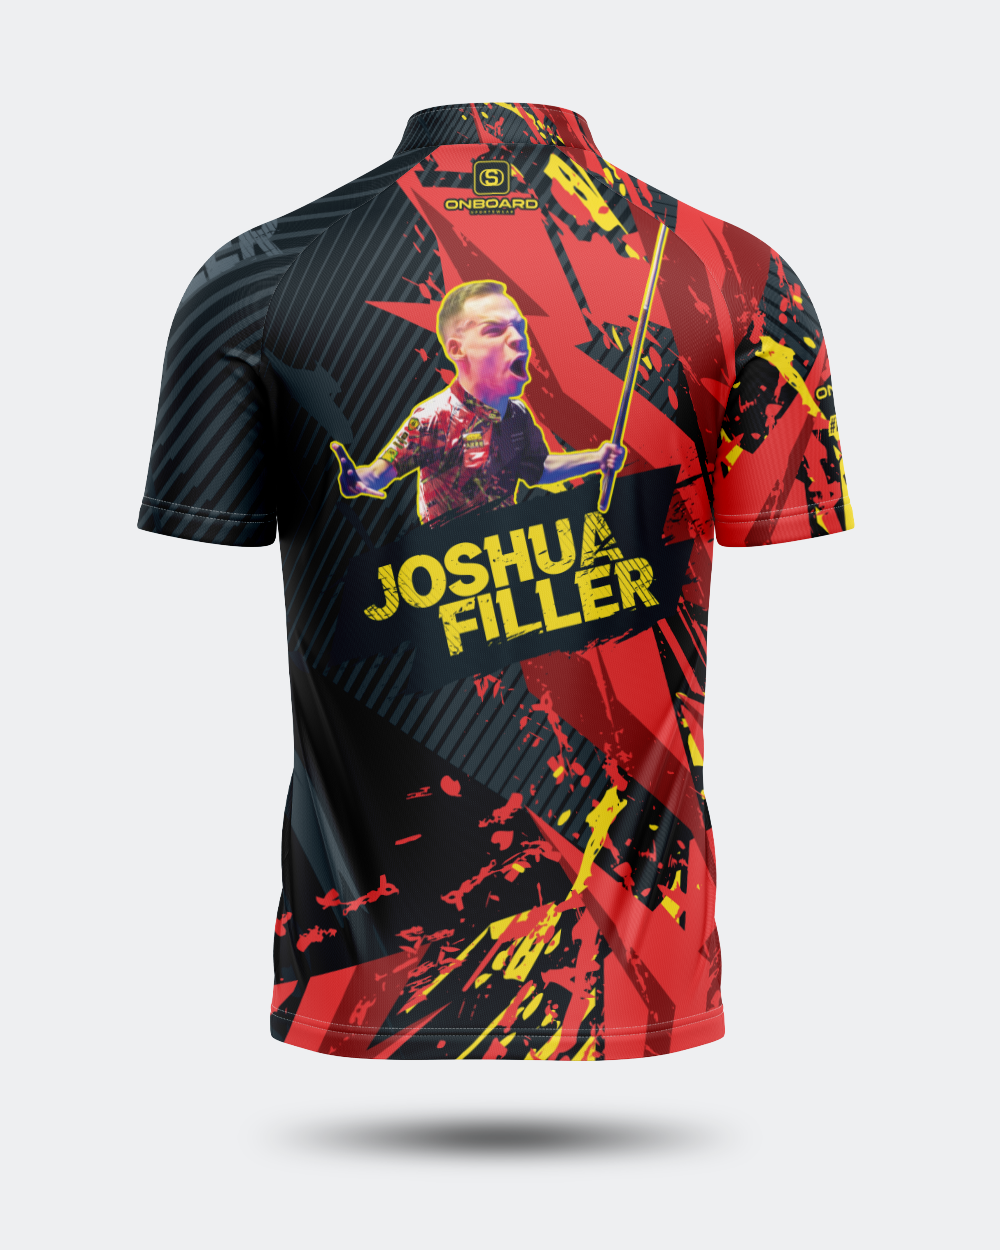 Joshua 'KillerFiller' Red Jersey